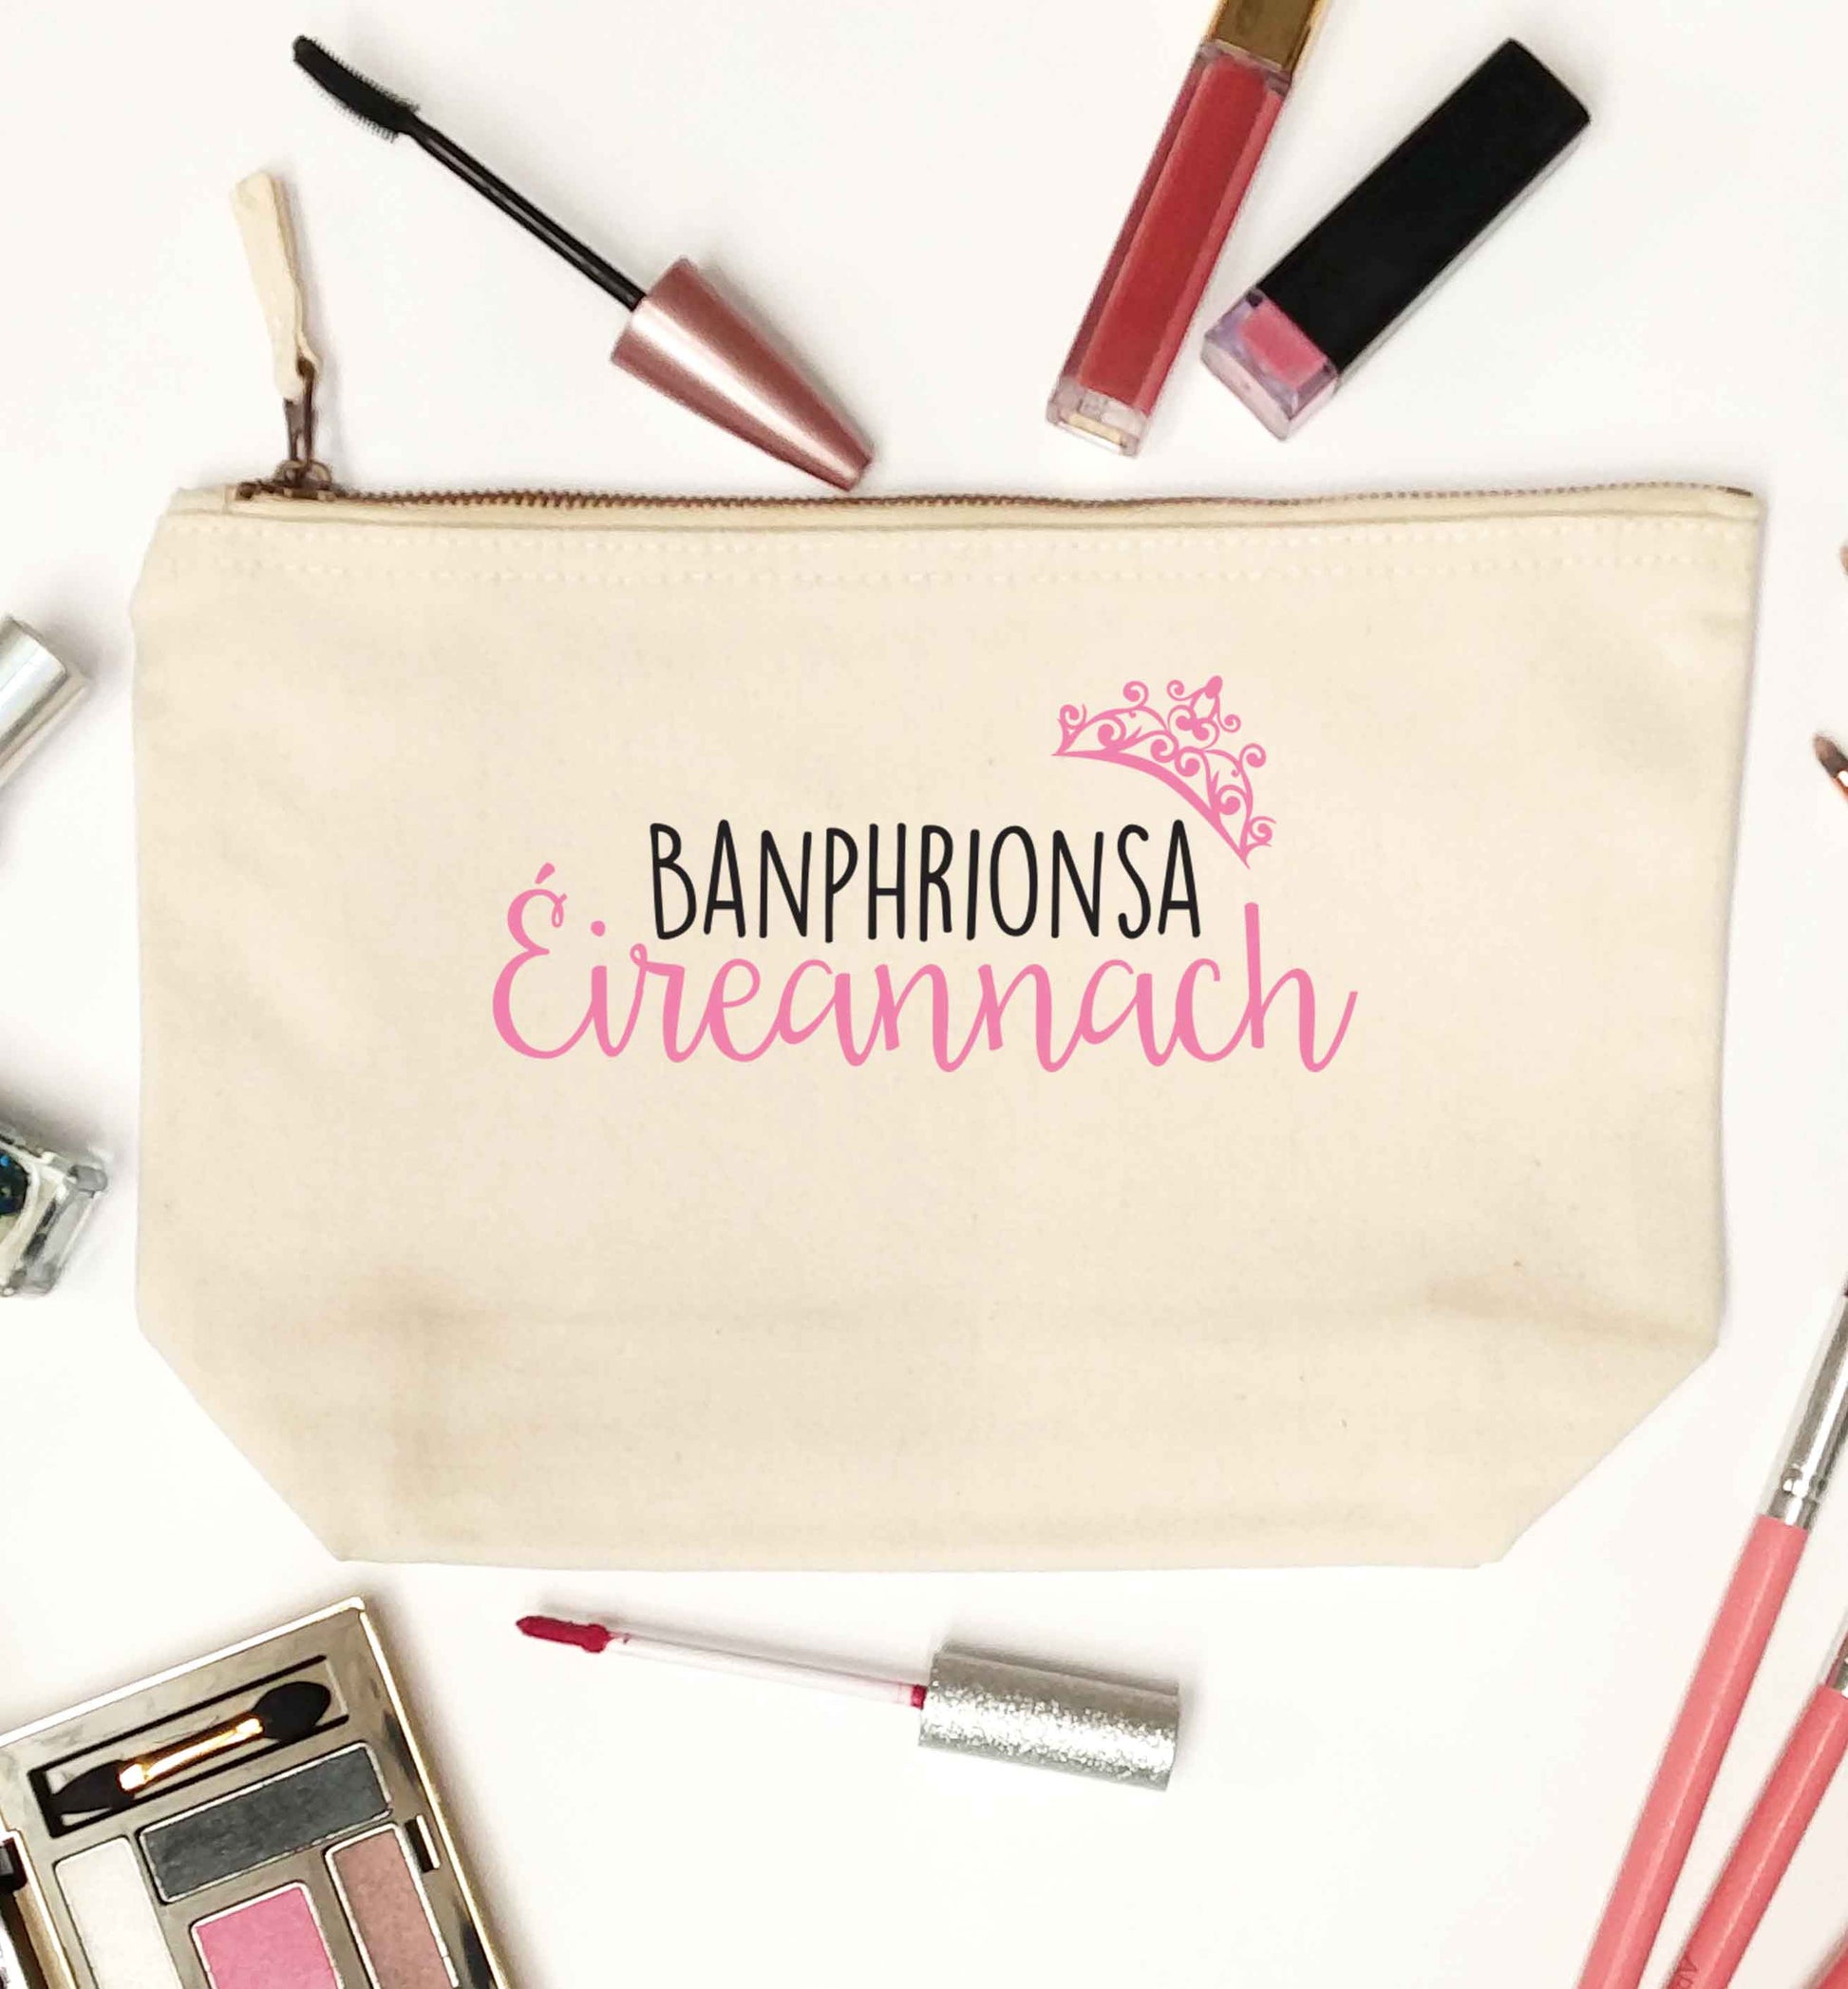 Banphrionsa eireannach natural makeup bag